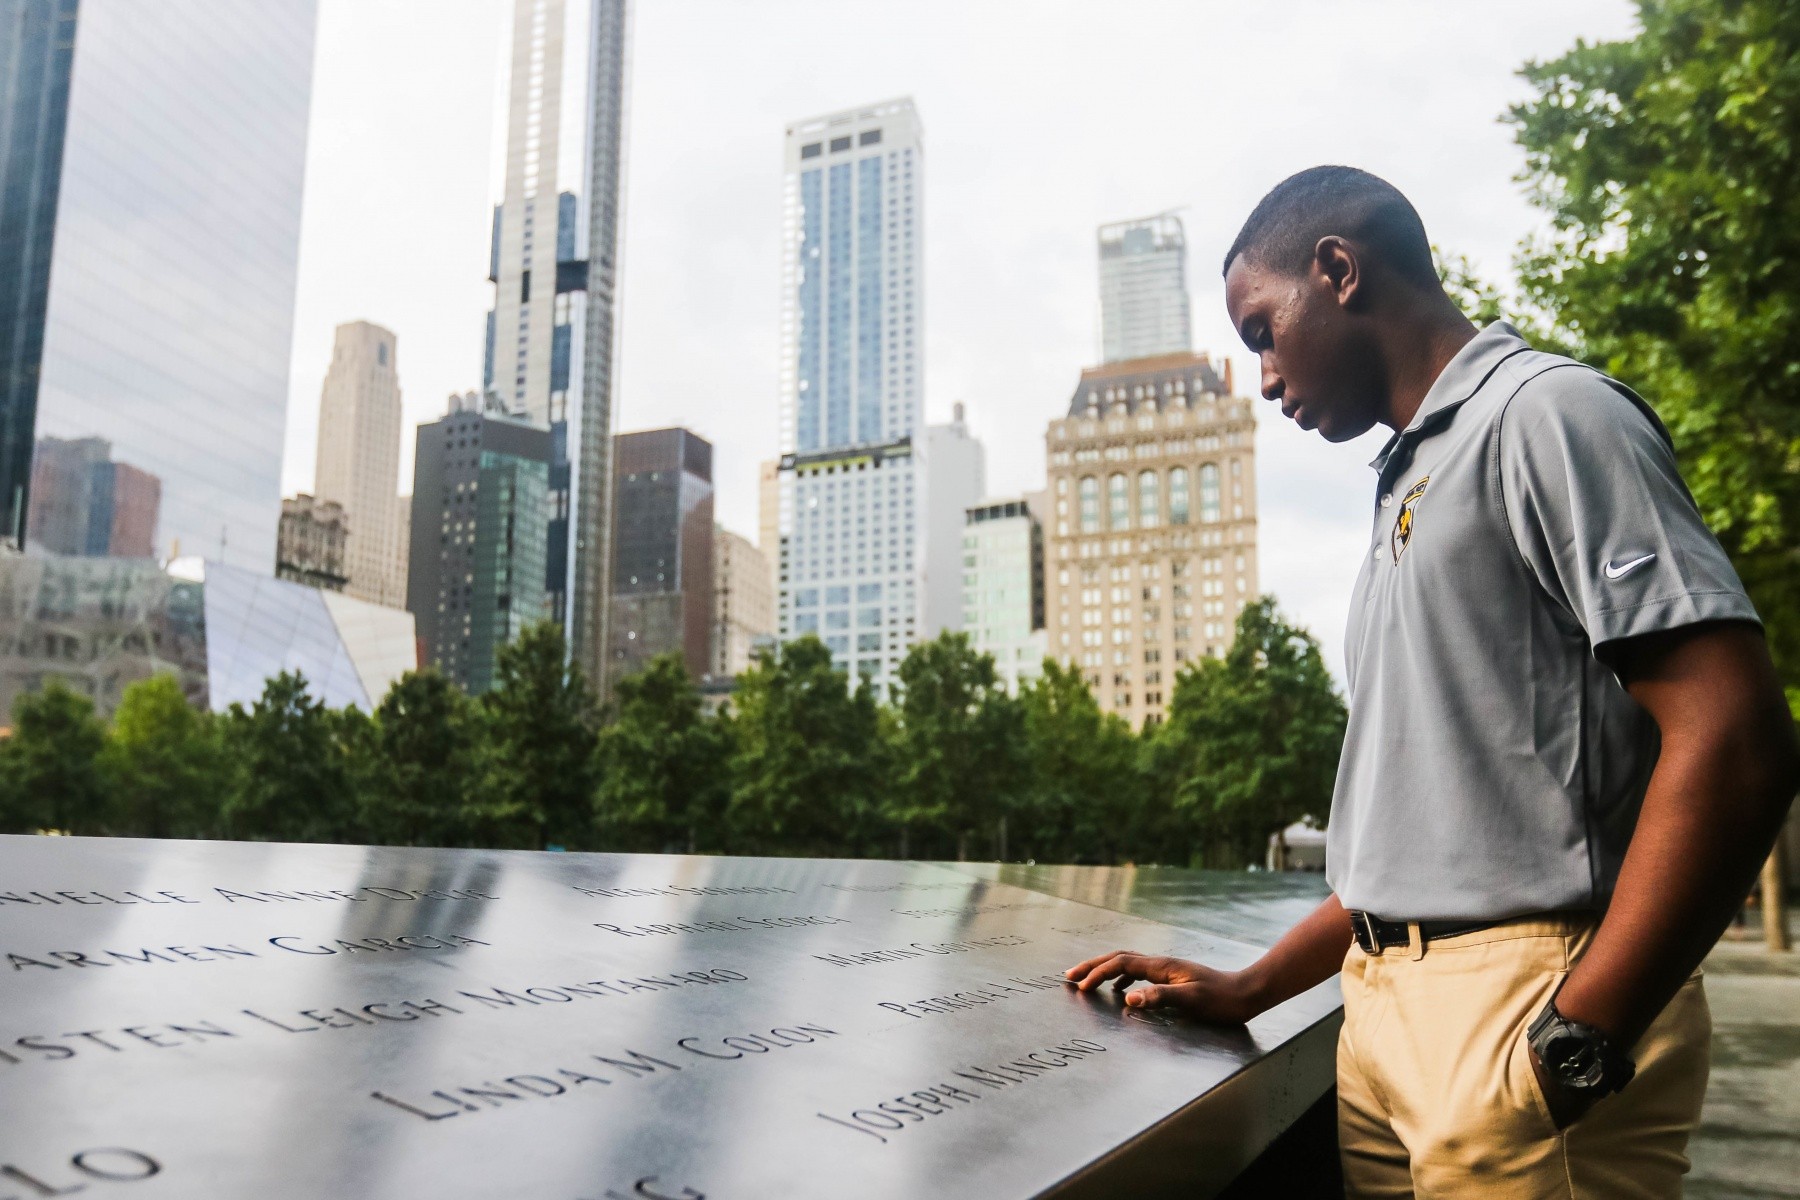 New York September 11 Remembrance Ceremony, September 11, 2017